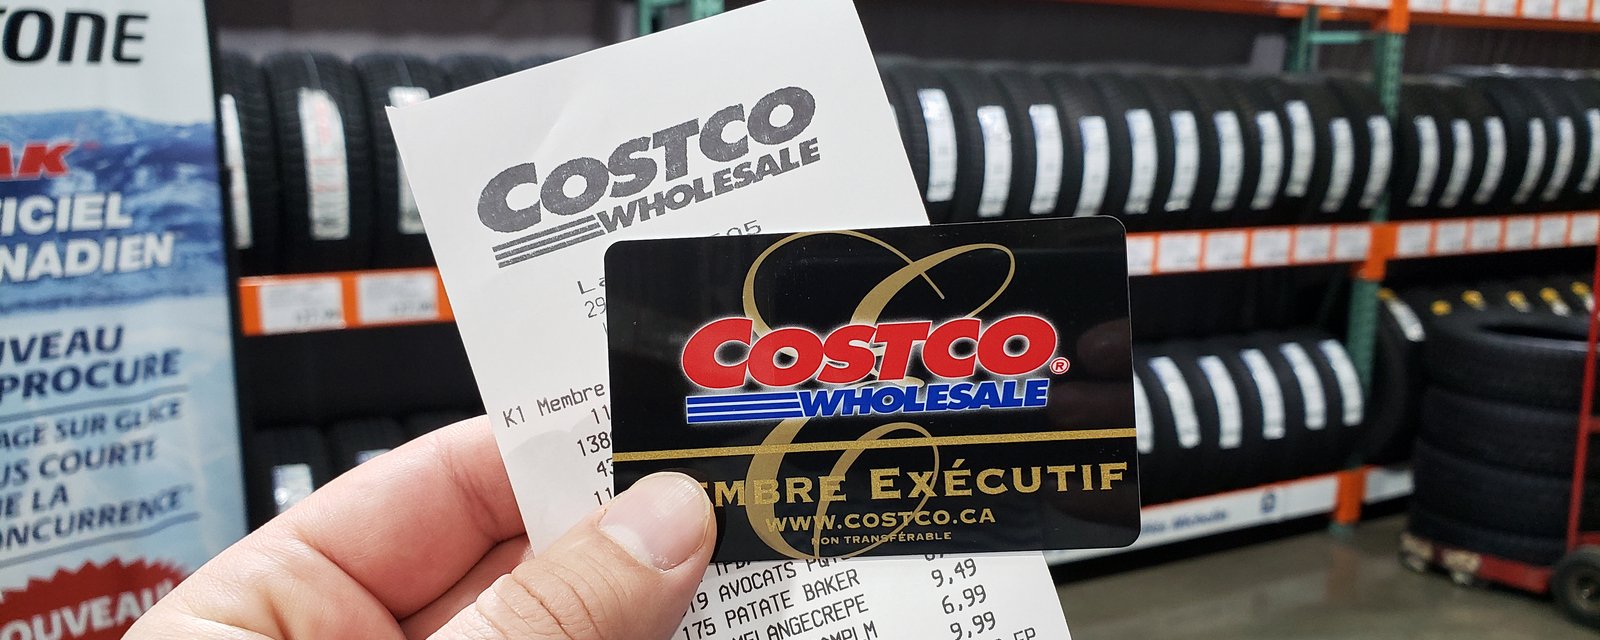 La raison pour laquelle Costco change souvent l'emplacement de ses produits.